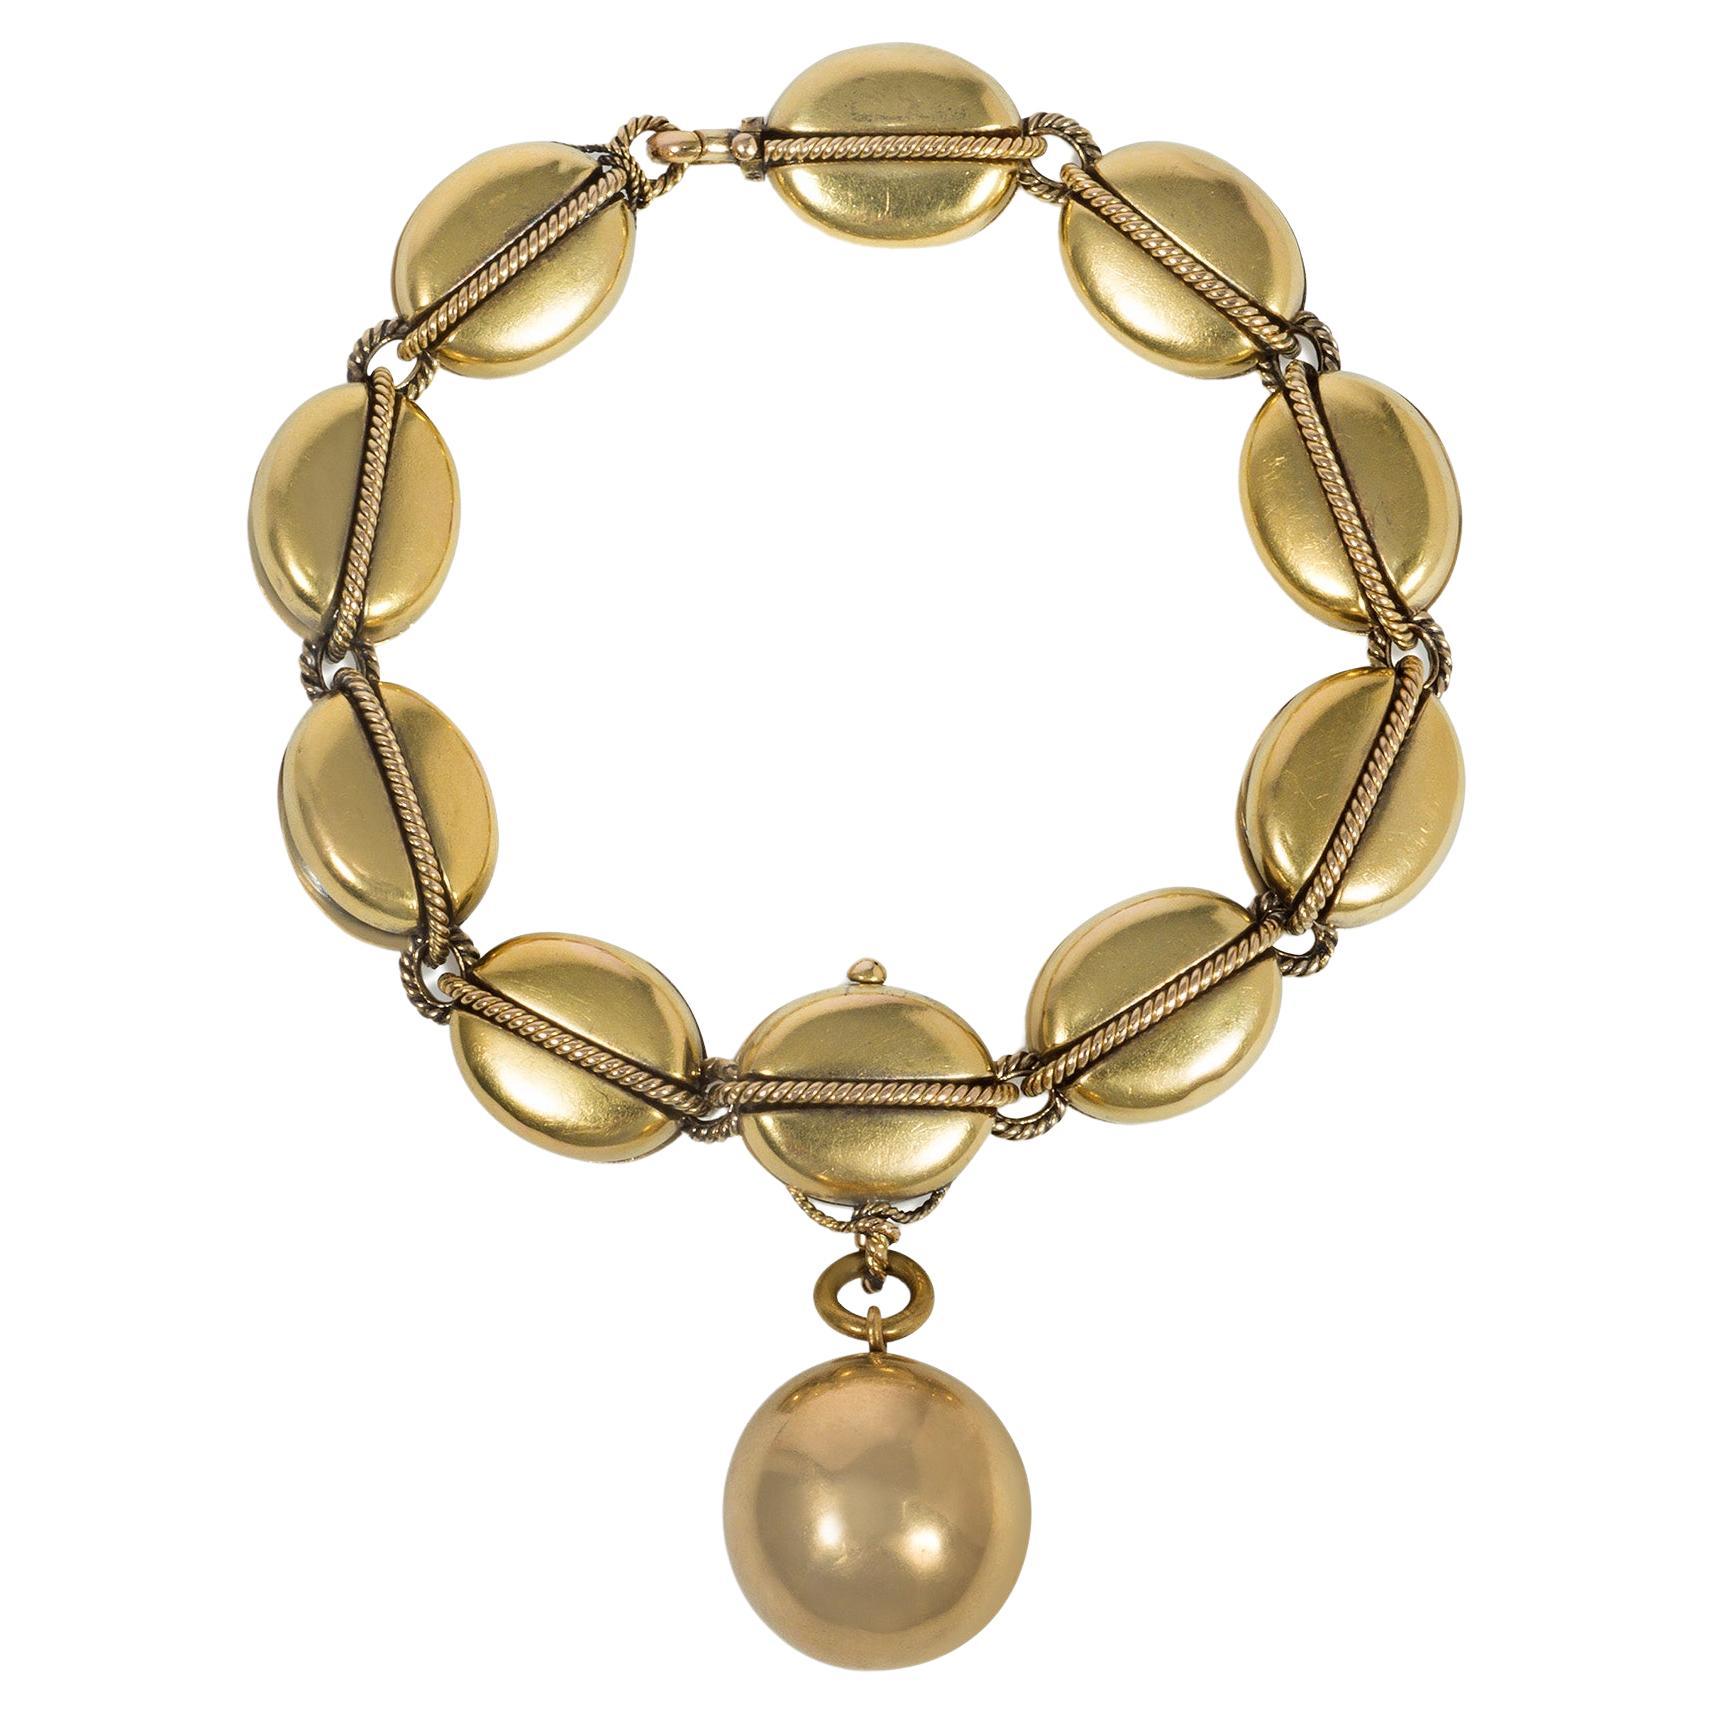 Viktorianisches goldenes nautisches Pulley-Gliederarmband aus Gold mit Medaillon-Charm, Hunt & Roskell